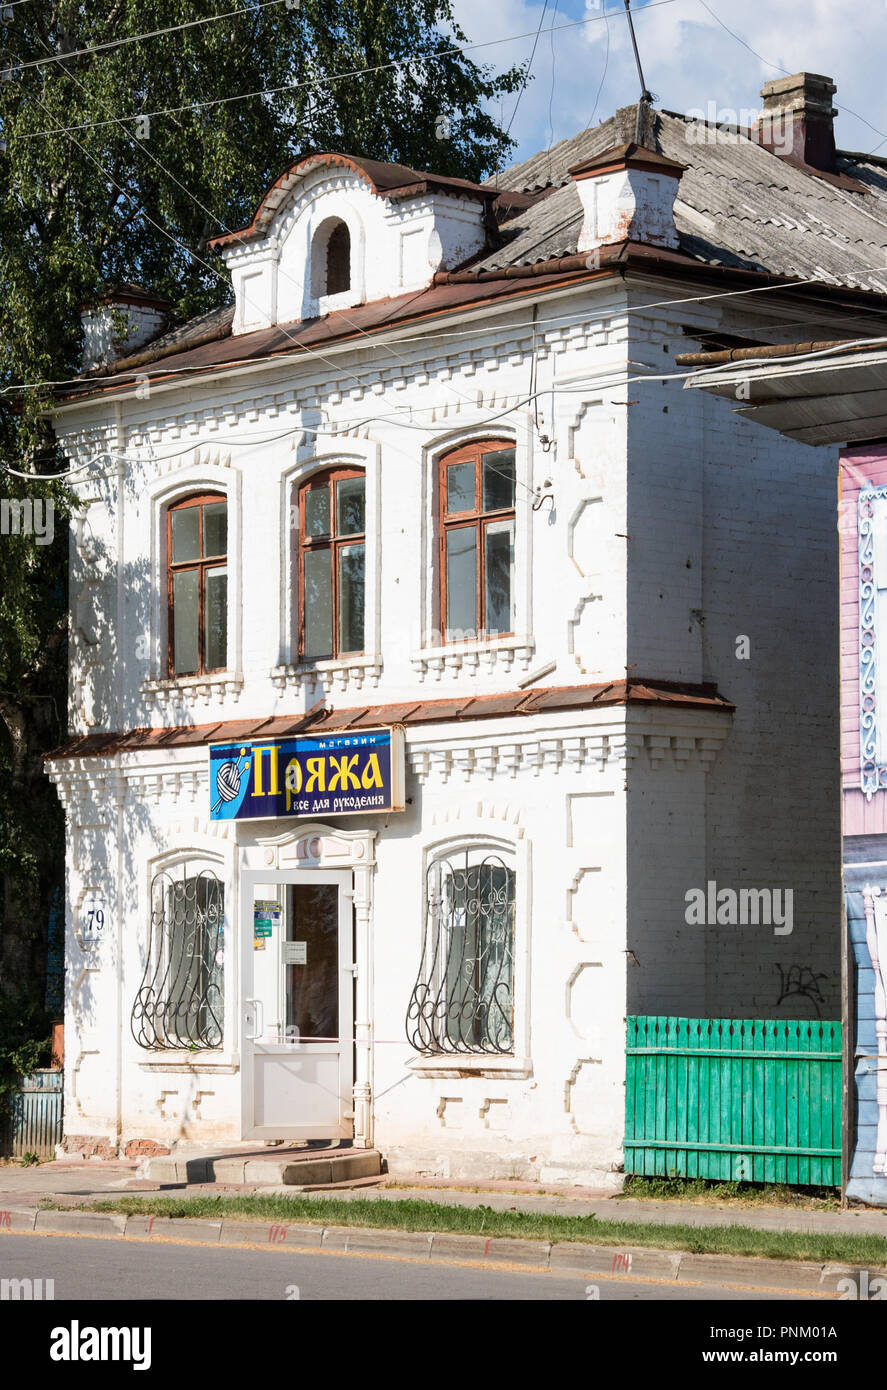 Weliki Ustjug, Vologda Region, Russland - 02 August, 2018: Shop von Garnen im alten Haus in kleinen nördlich der Stadt. Russland Stockfoto